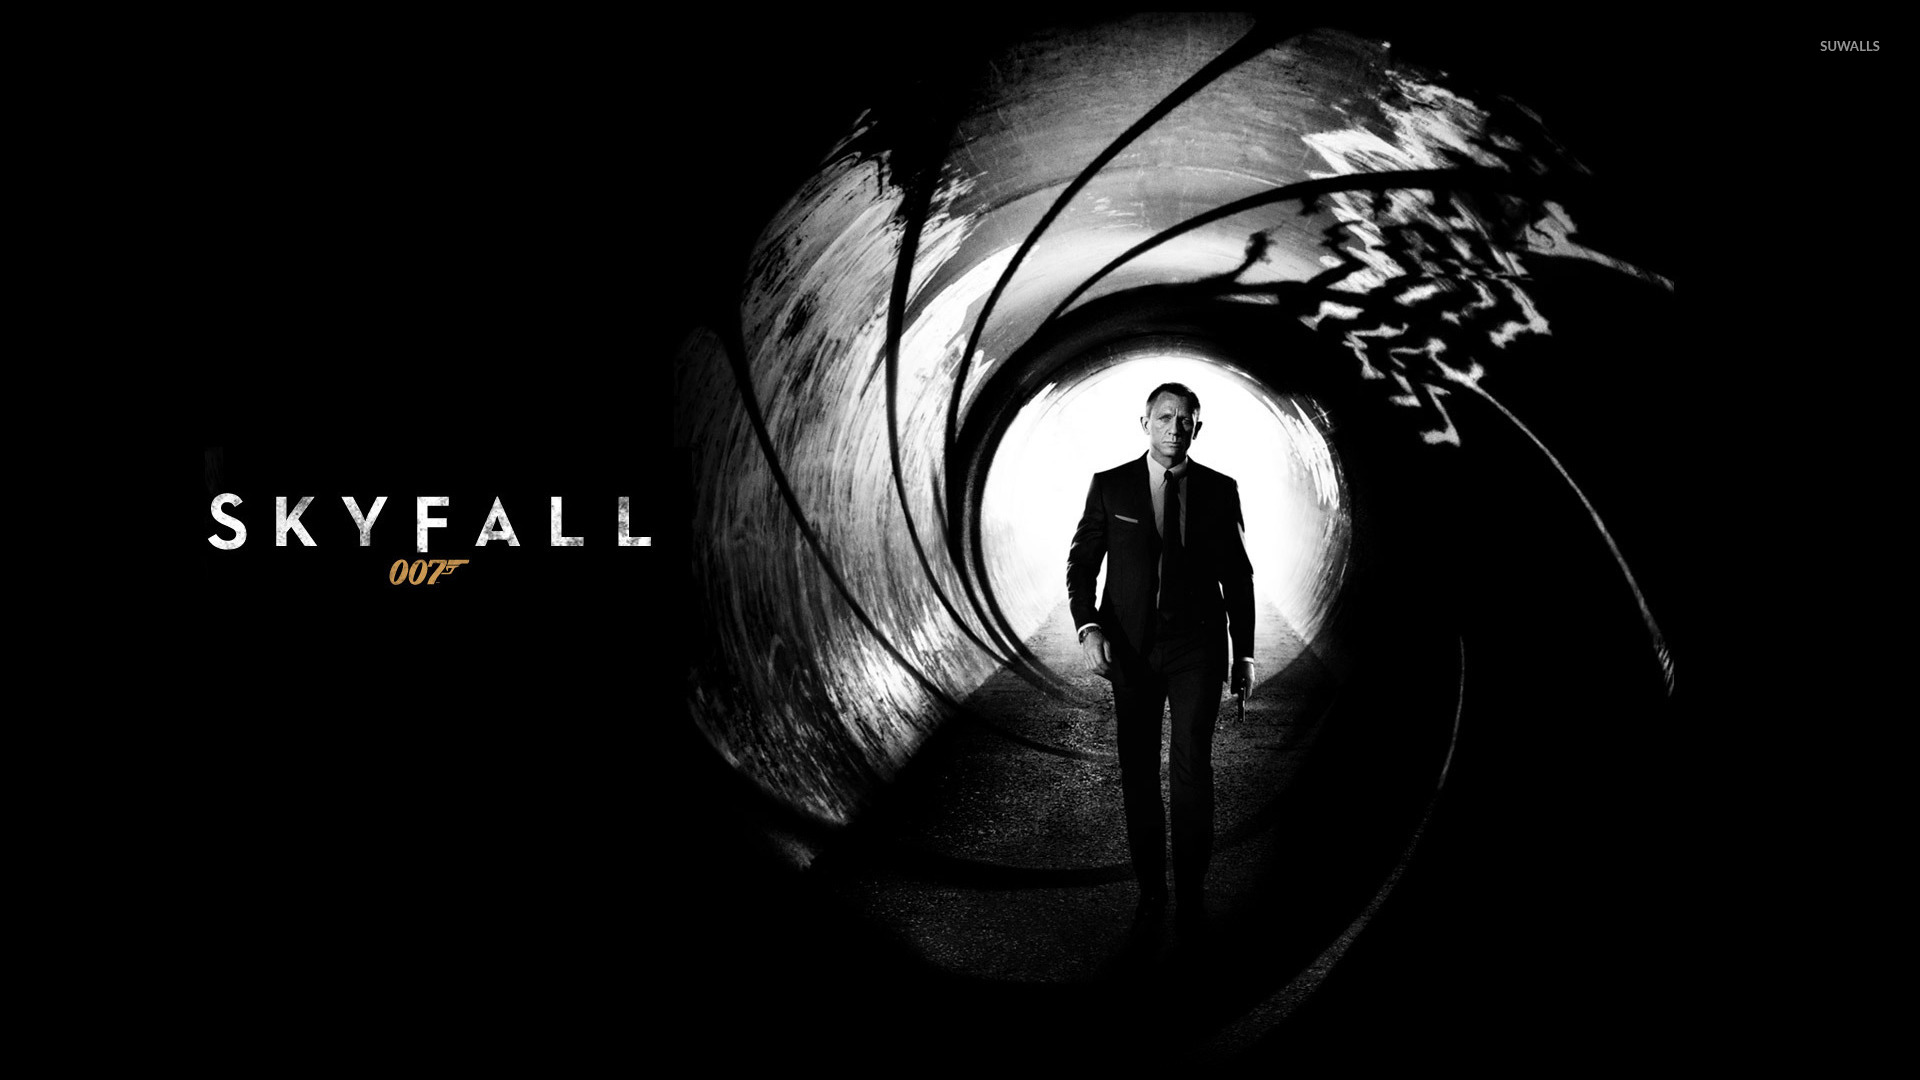 James Bond Skyfall Wallpaper Movie